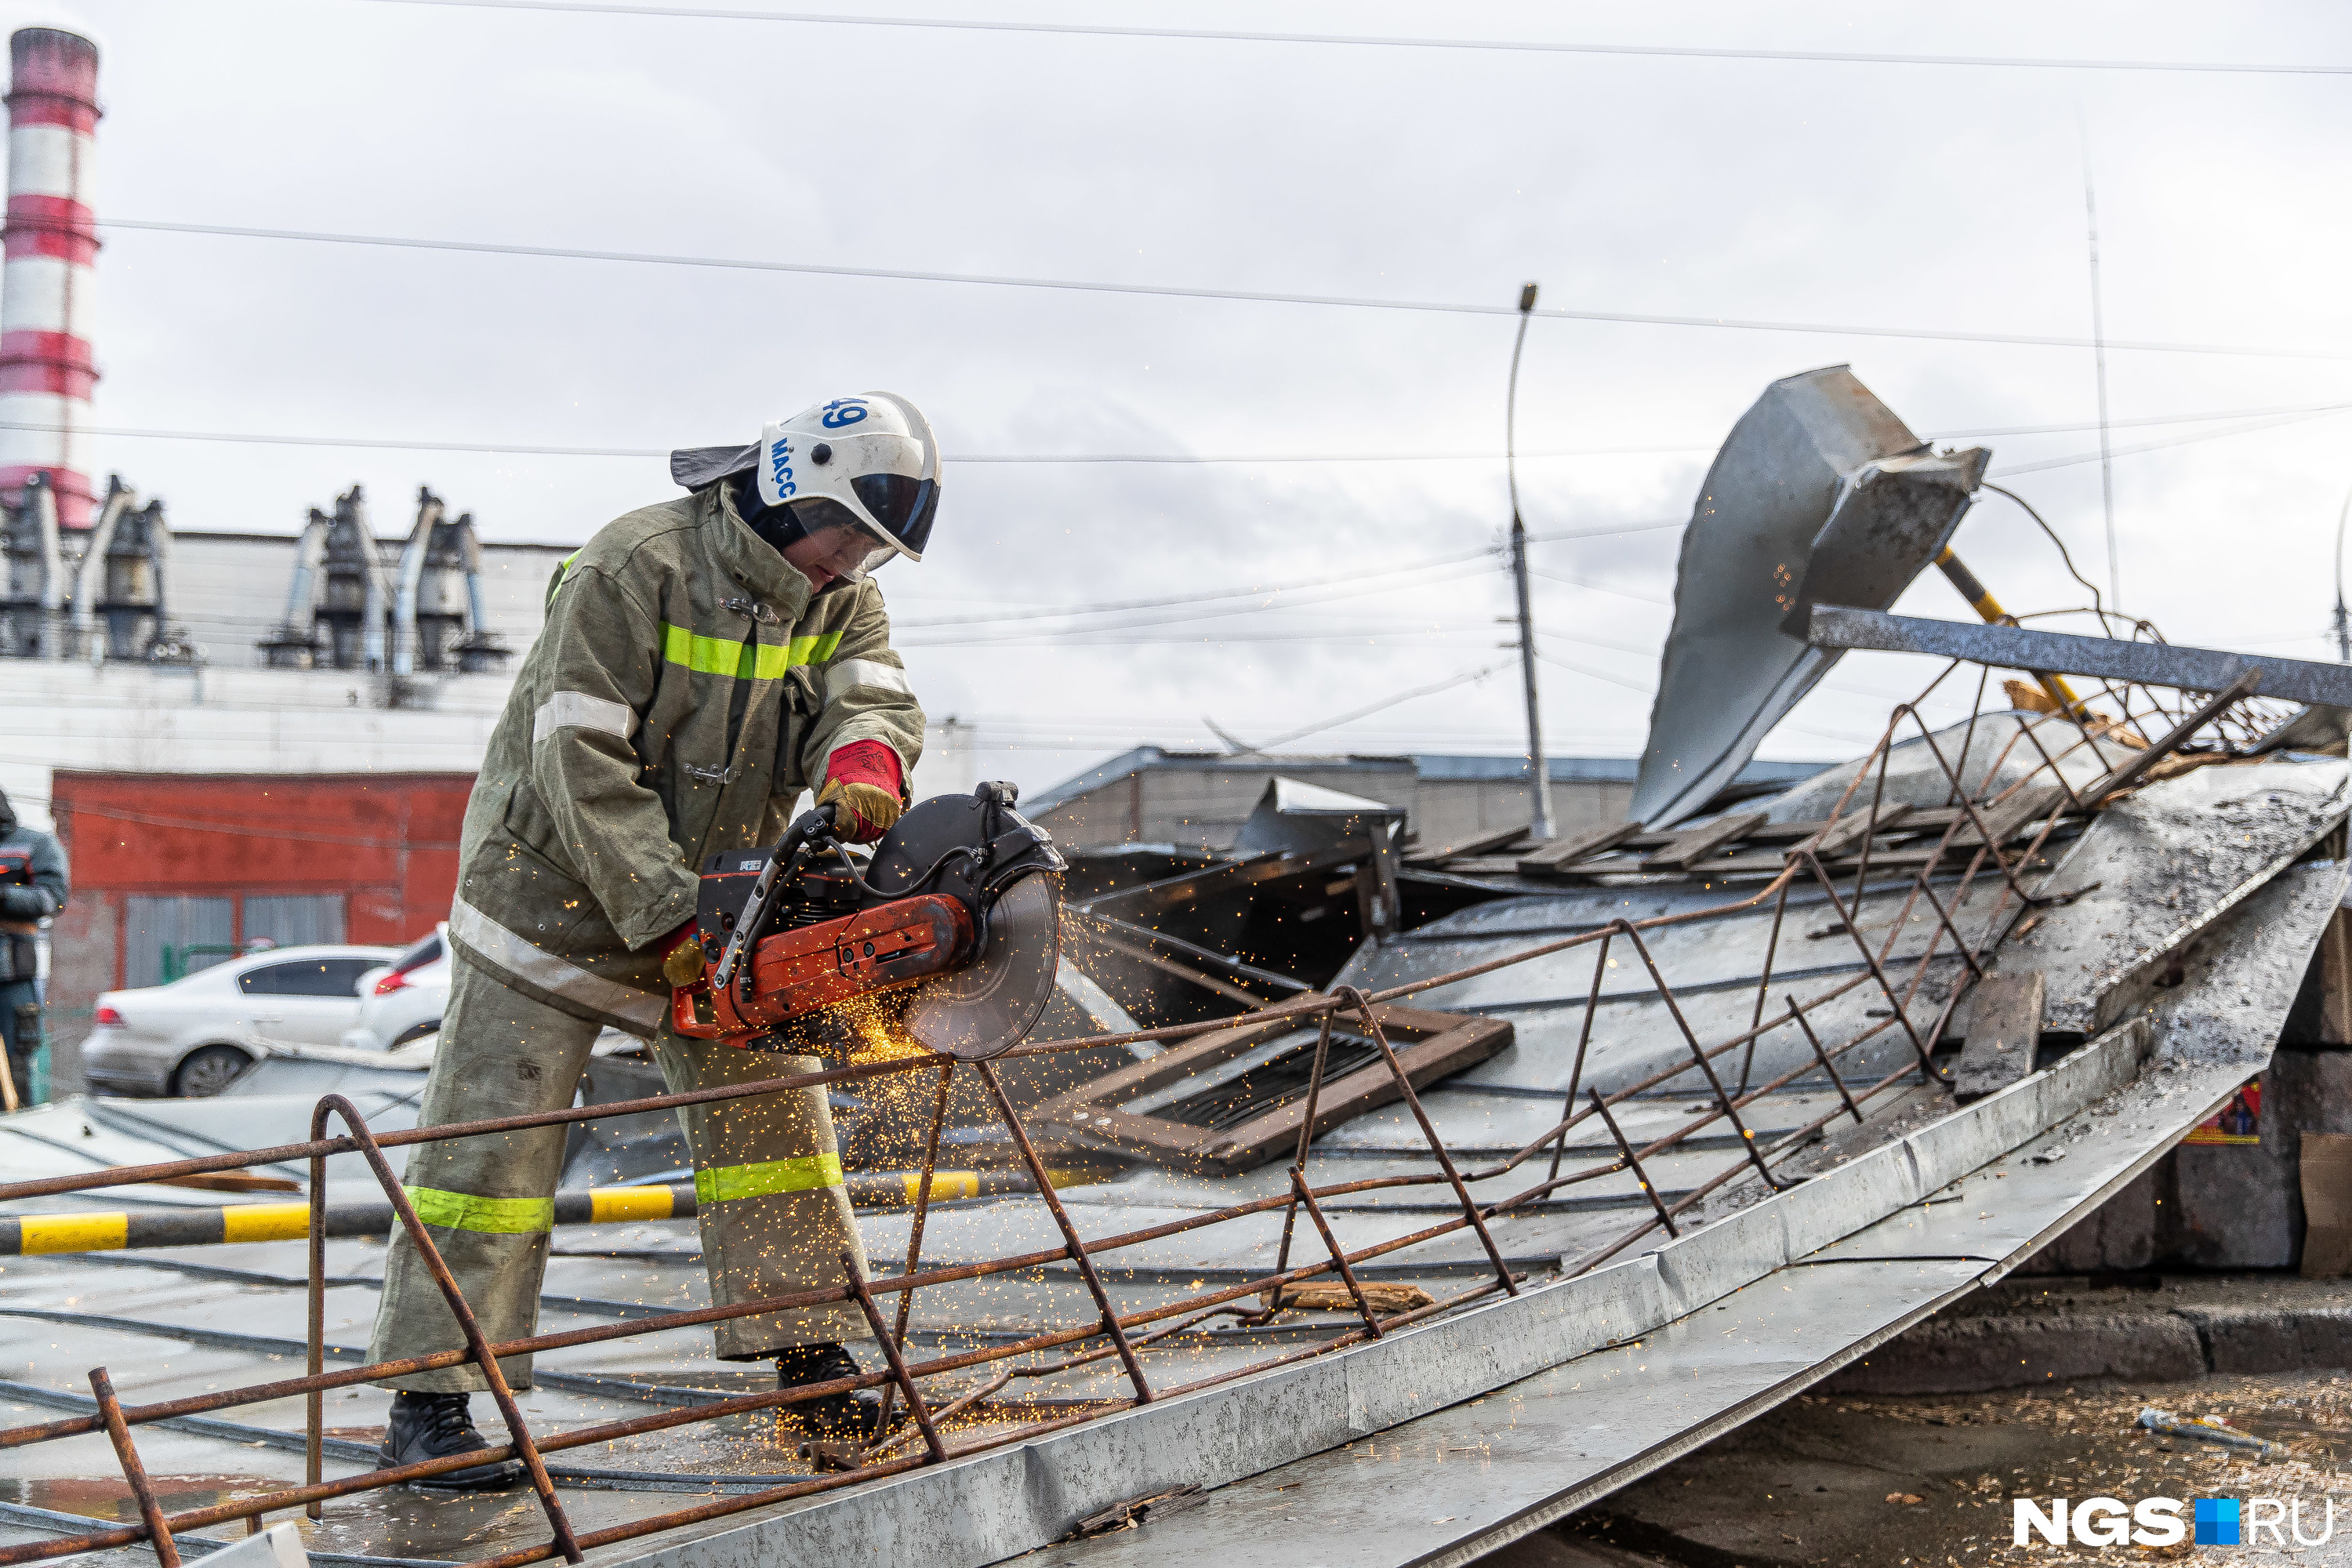 Часть крыши пришлось разбирать спасателям: железо лежало слишком уж ненадежно